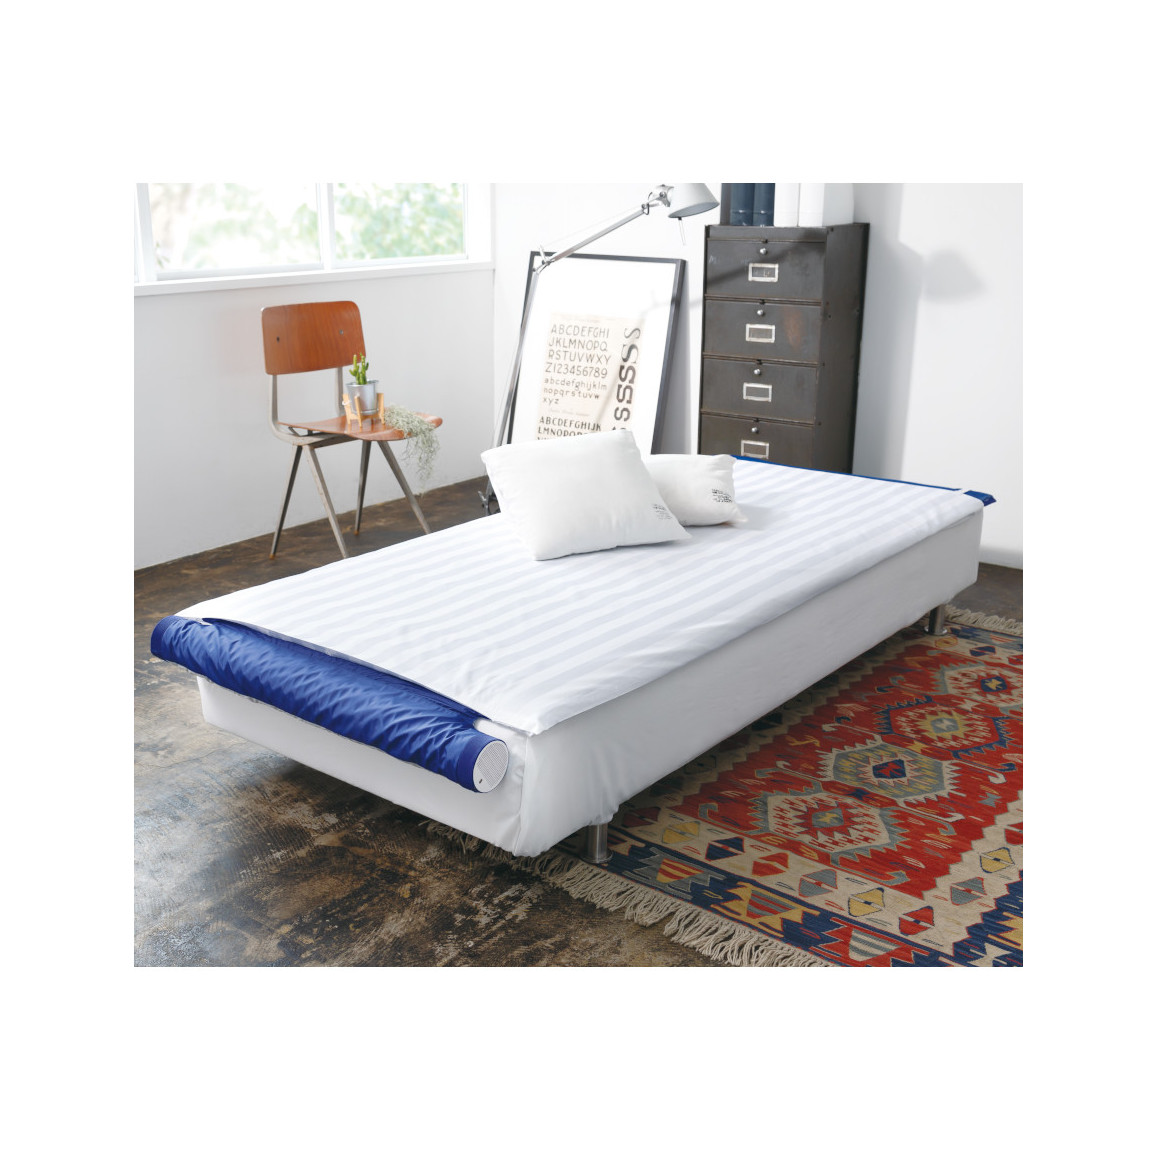 寝具 夏のベッド用品 快適睡眠 体の下に風が吹き抜ける 送料無料   空調ベッド風眠3 KBTS03